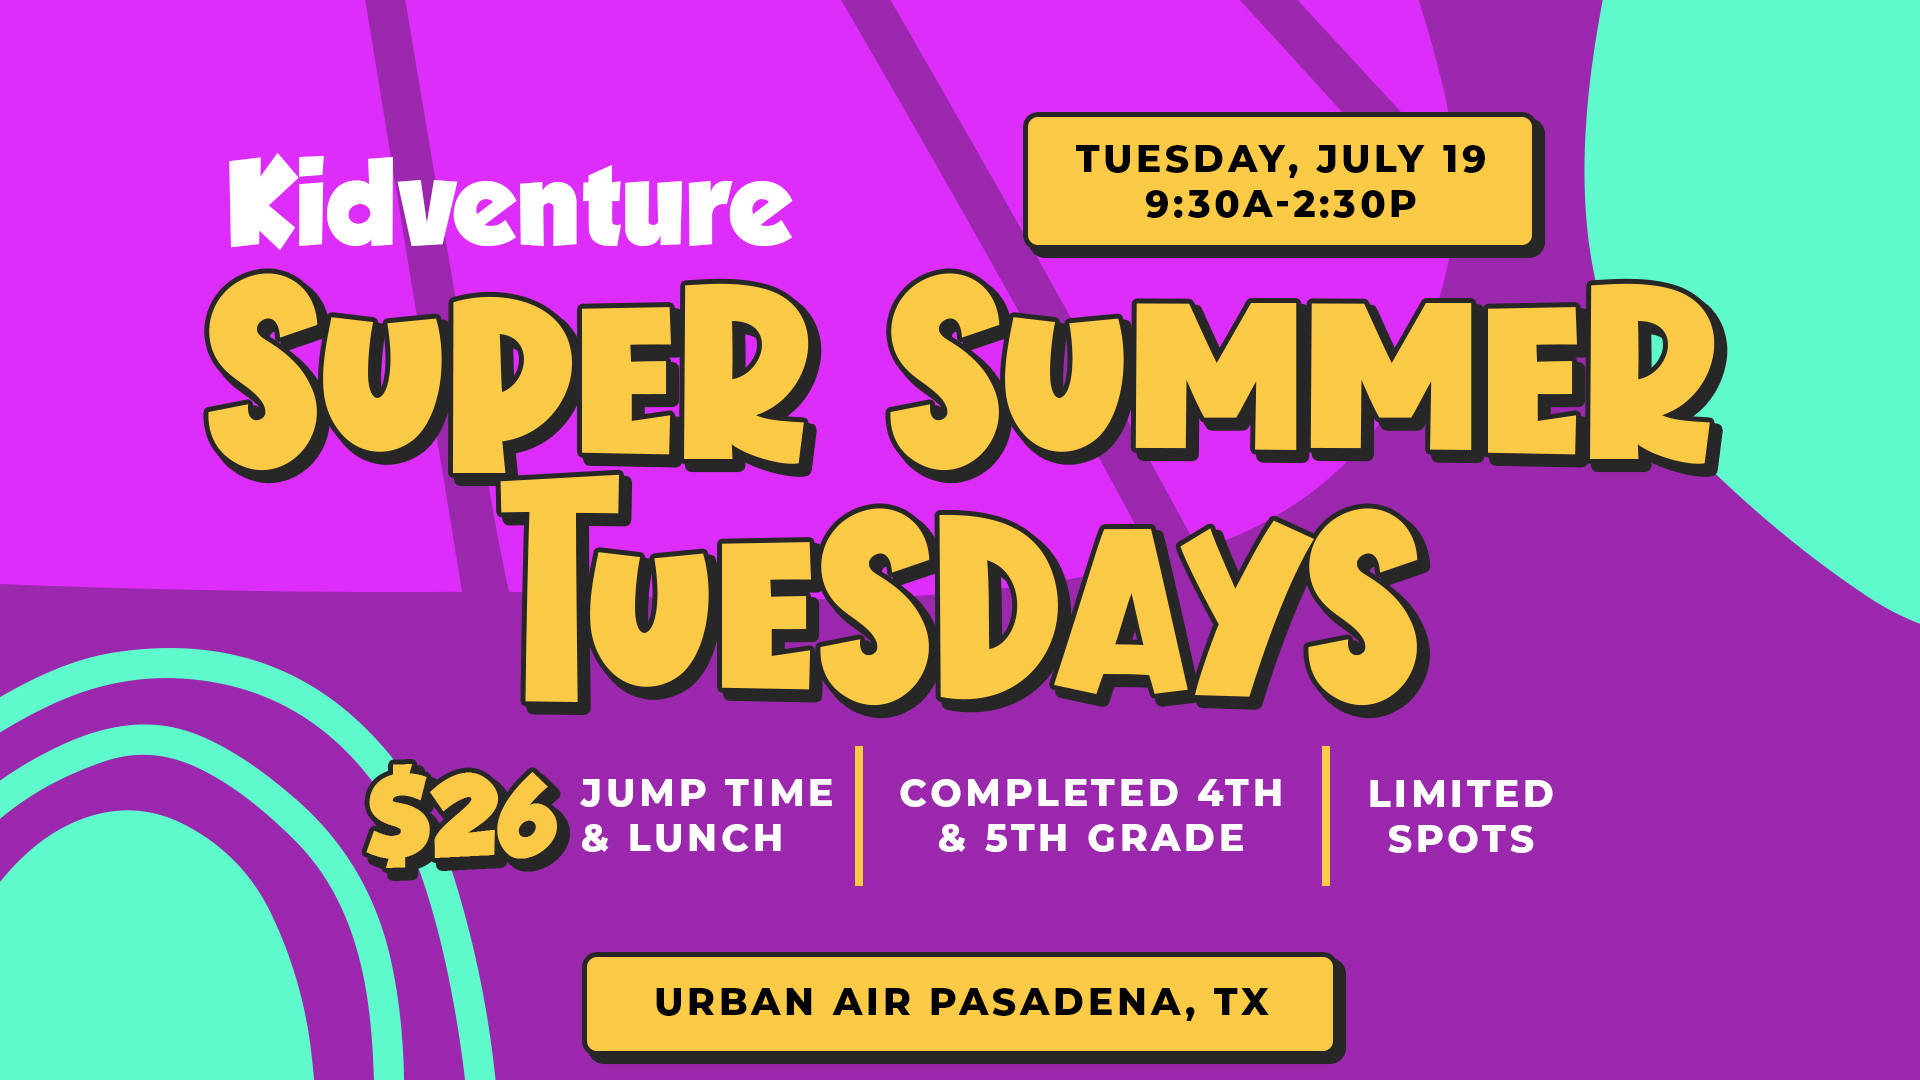 Super Summer Tuesdays: Urban Air